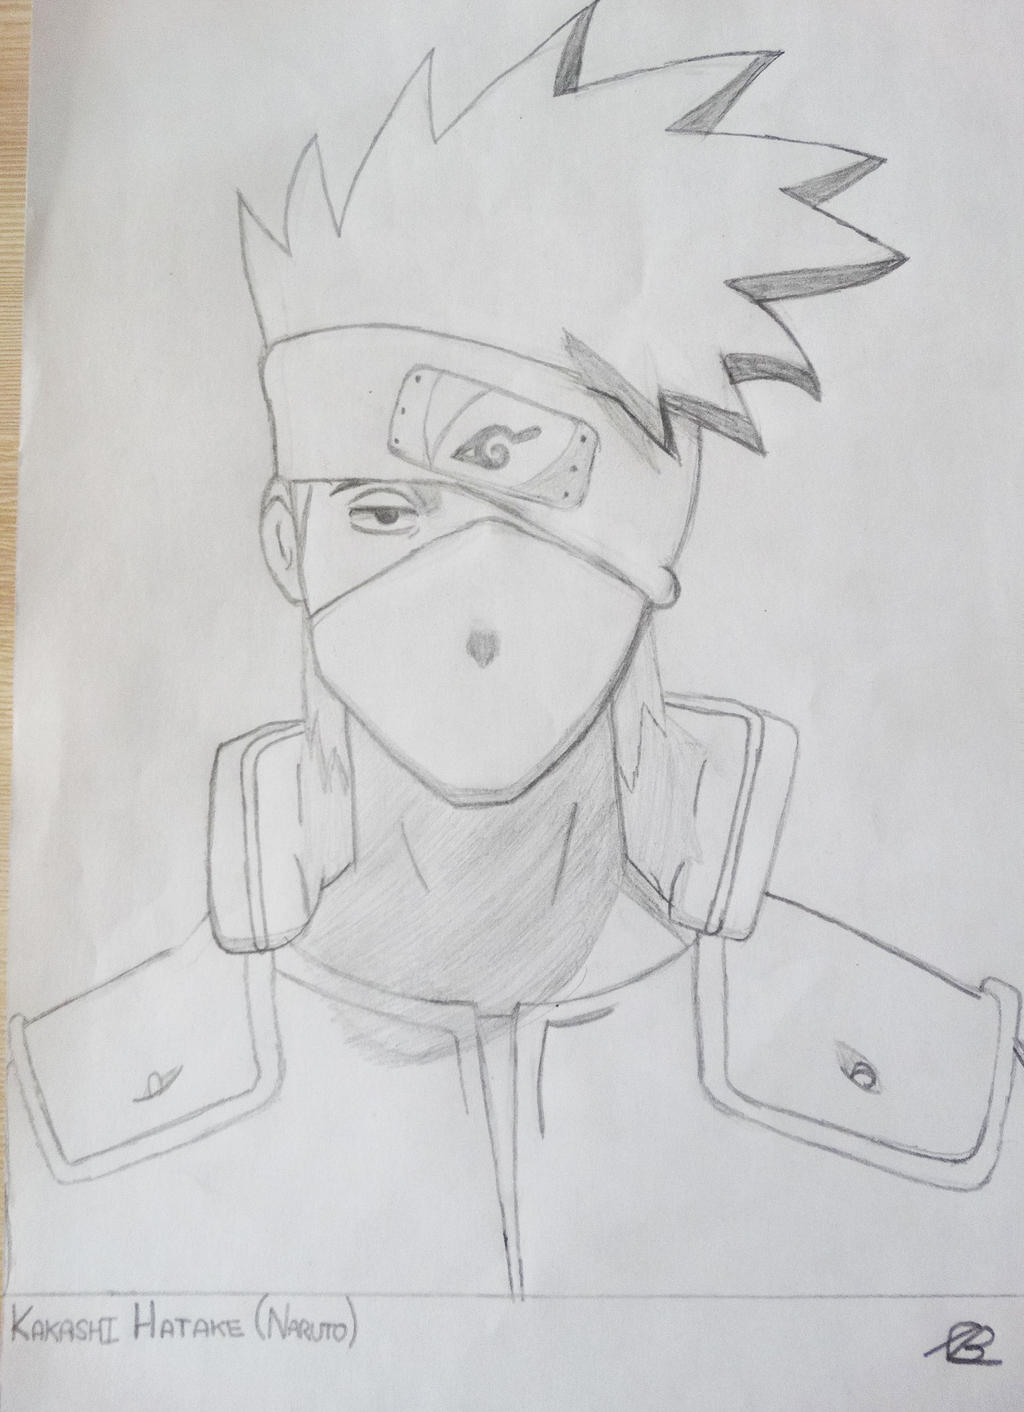 How to draw Kakashi from Naruto., Hiroshi Yoshi